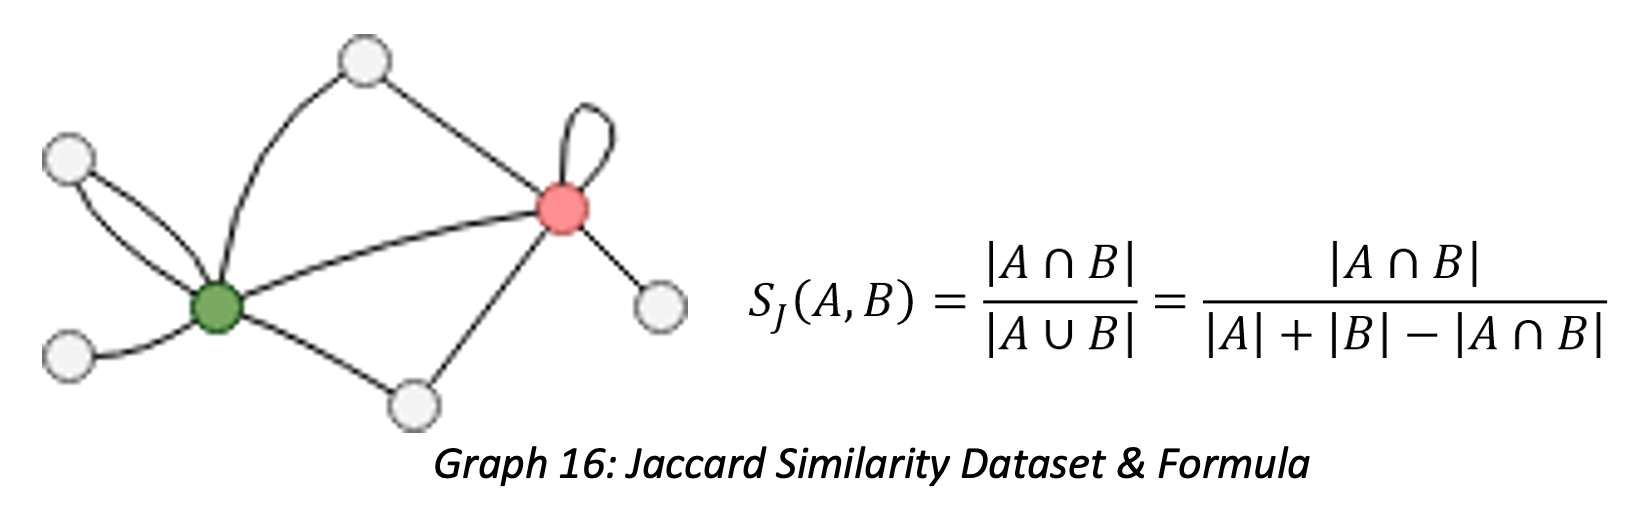 Jaccard Similarity Dataset & Formula